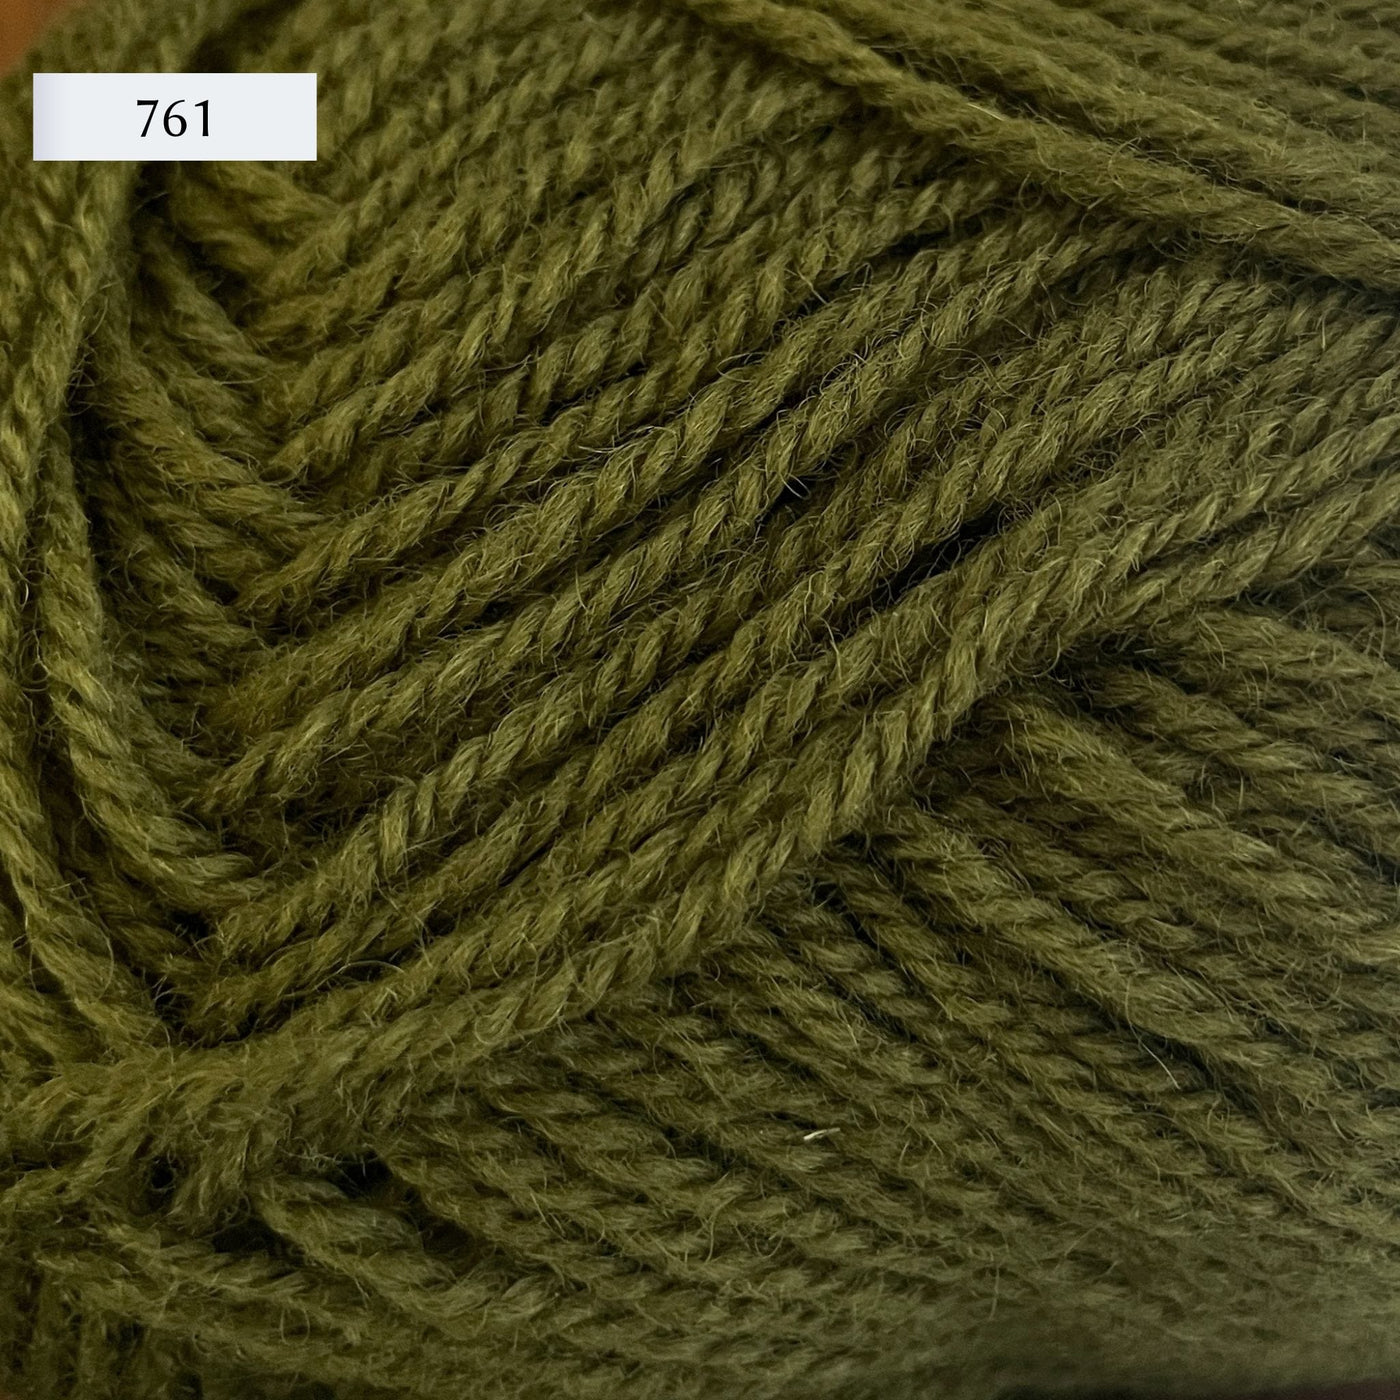 Rauma Strikkegarn, DK weight yarn, in color 761, army green